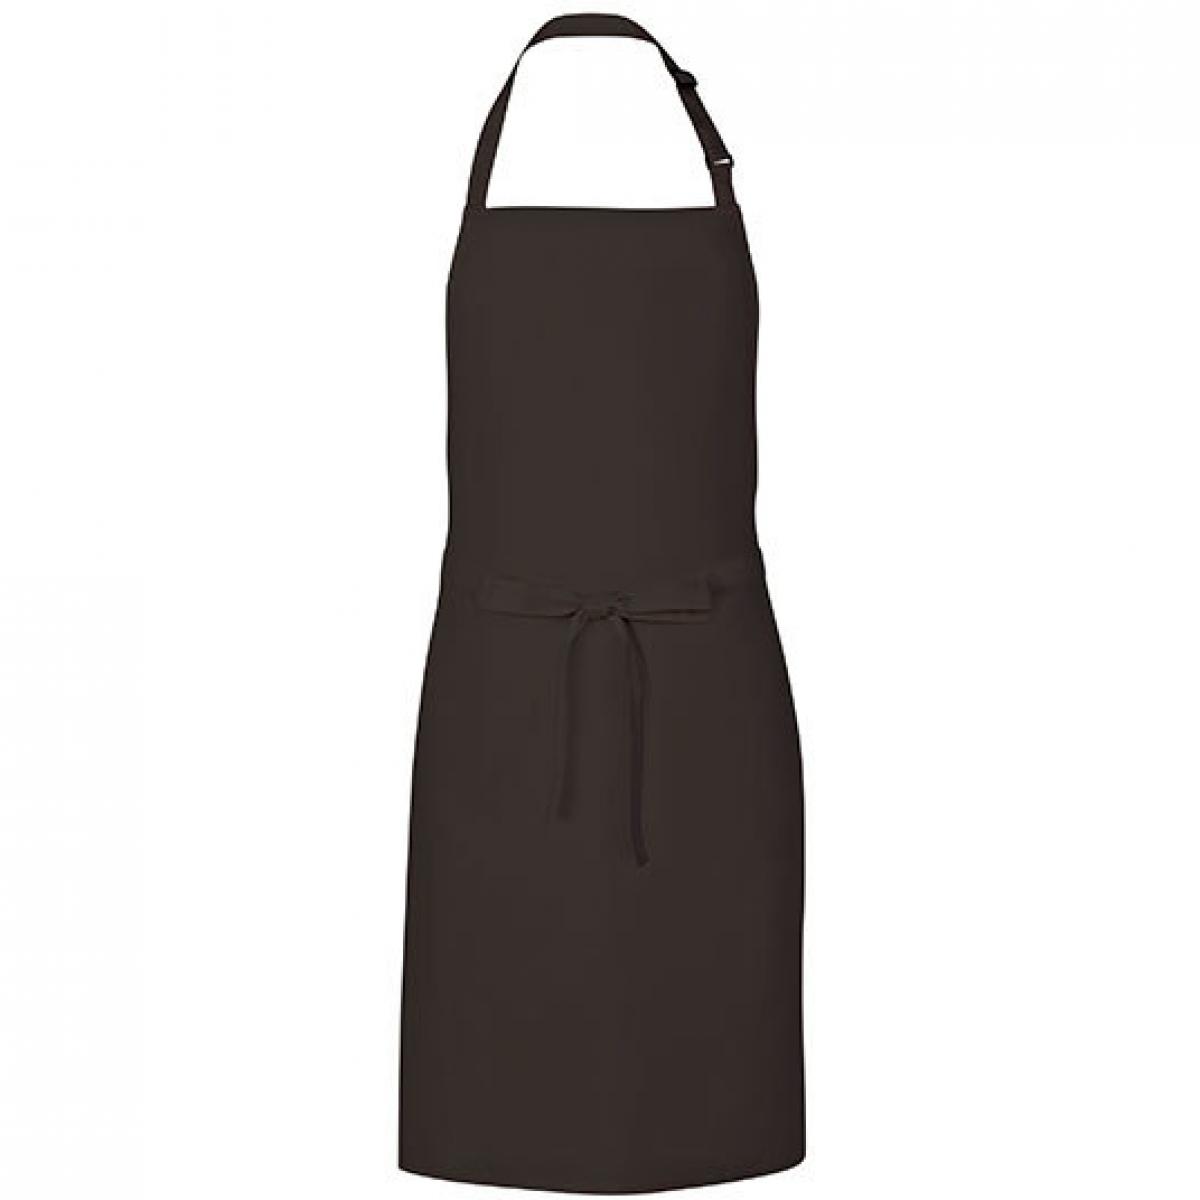 Hersteller: Link Kitchen Wear Herstellernummer: MS8572 Artikelbezeichnung: Multi Apron - 72 x 85 cm - Waschbar bis 60 °C Farbe: Black